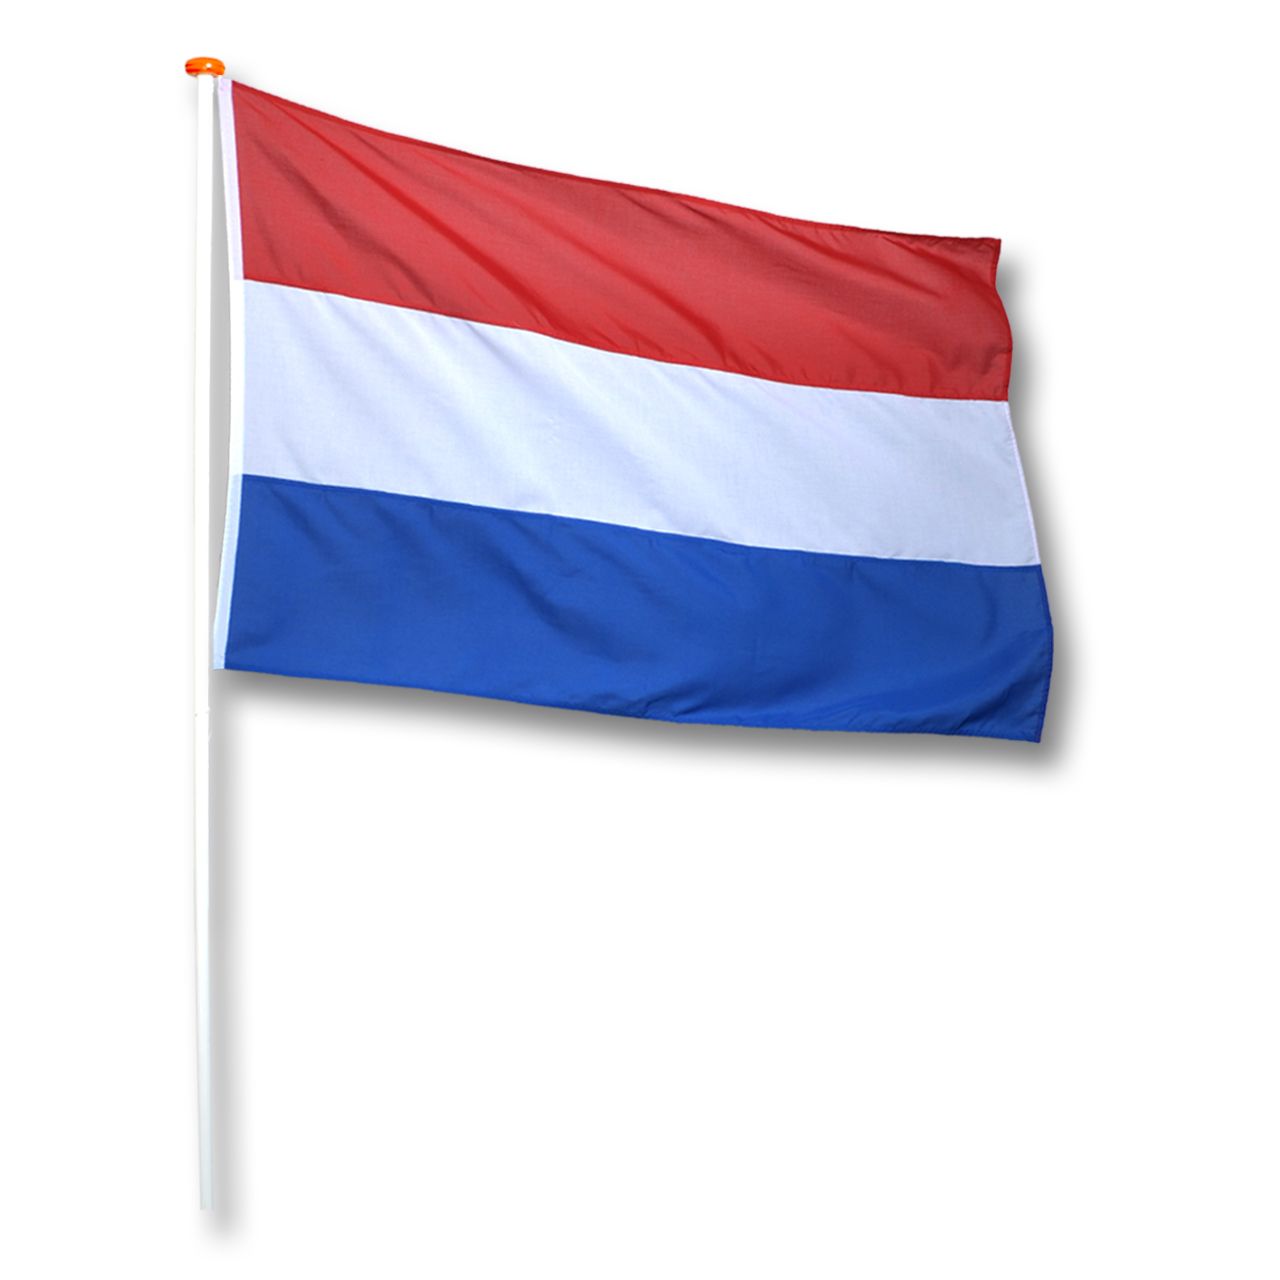 Durf kiezen Missend Vlag Nederland Rood-Wit-Blauw - Ooms Feestwinkel